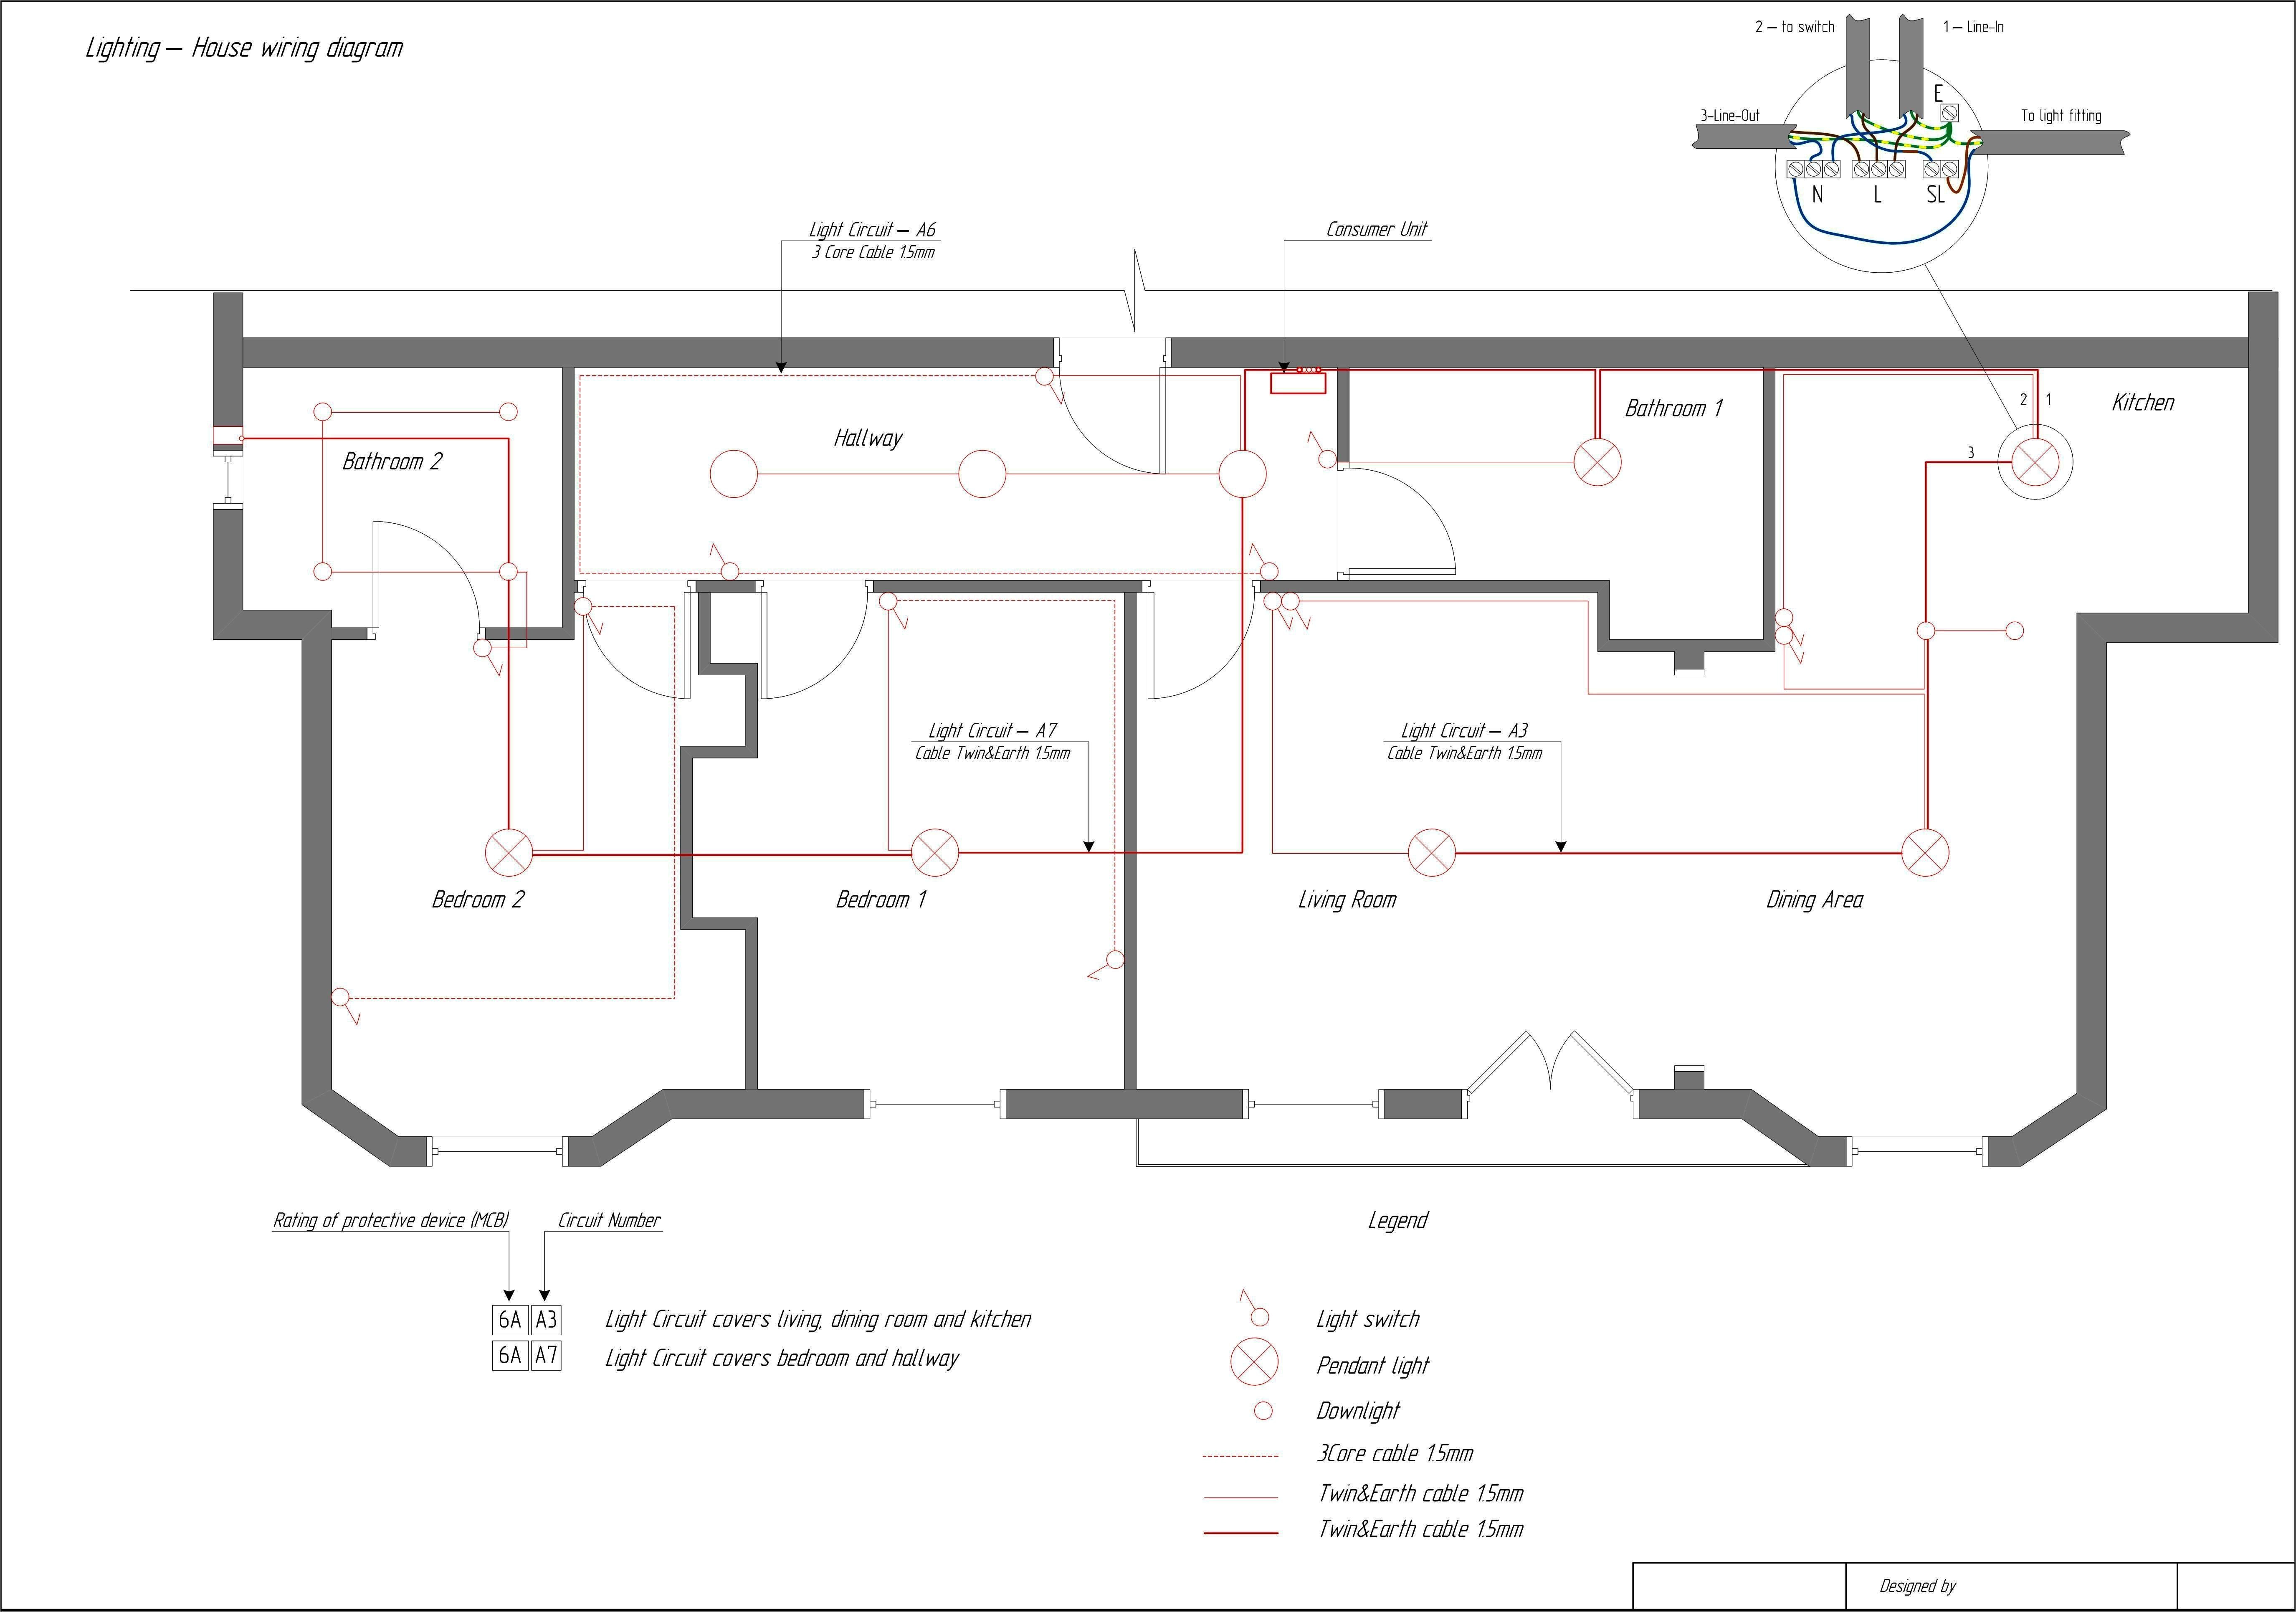 bmw e83 wiring diagram manual e book floor dimmer switch wiring diagram floor wiring diagram